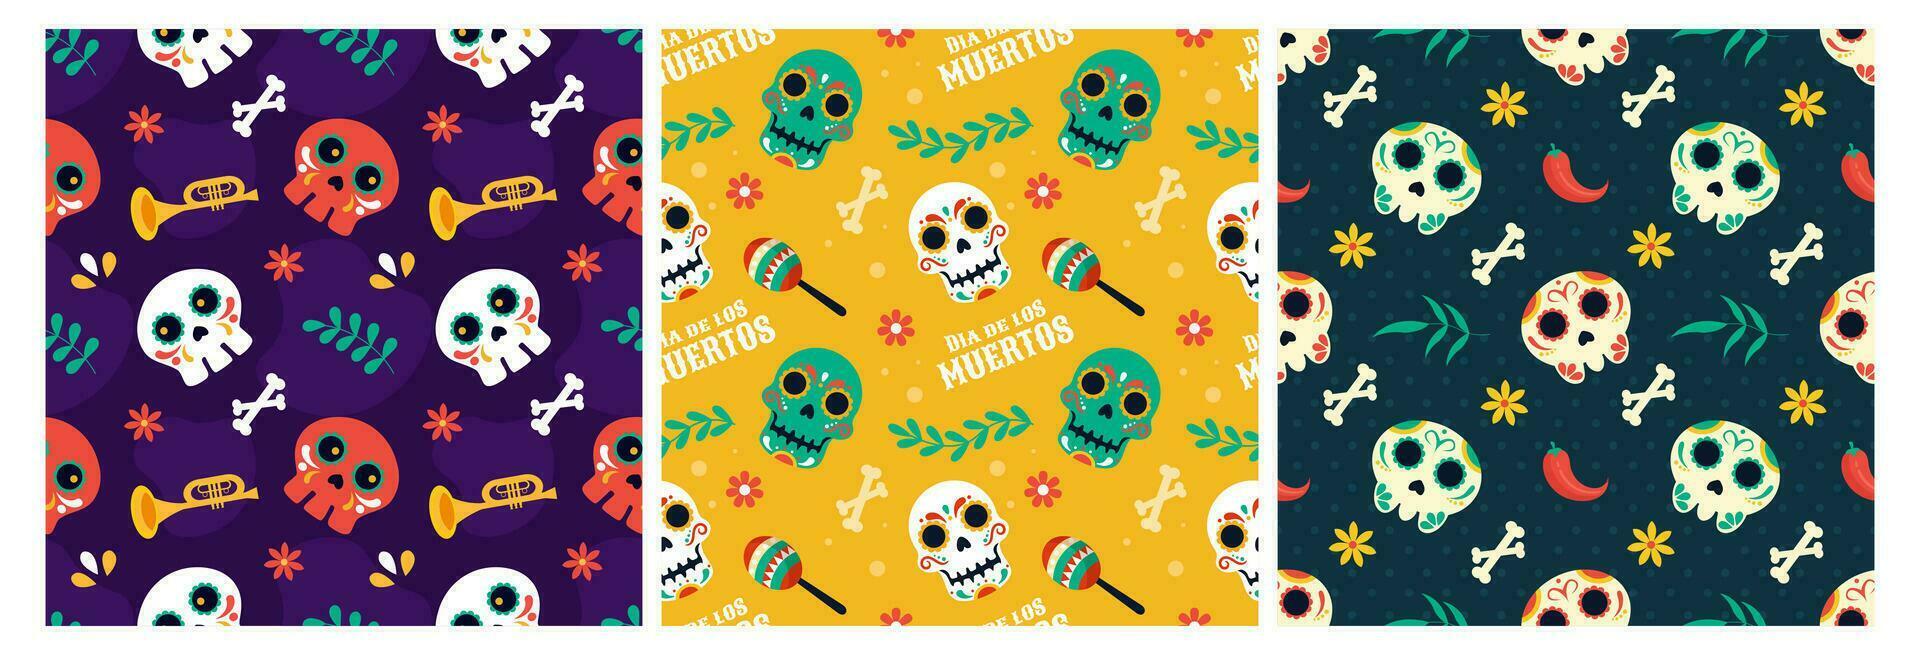 uppsättning av dia de muertos sömlös mönster illustration med dag av de död- och skelett element i mexikansk design vektor